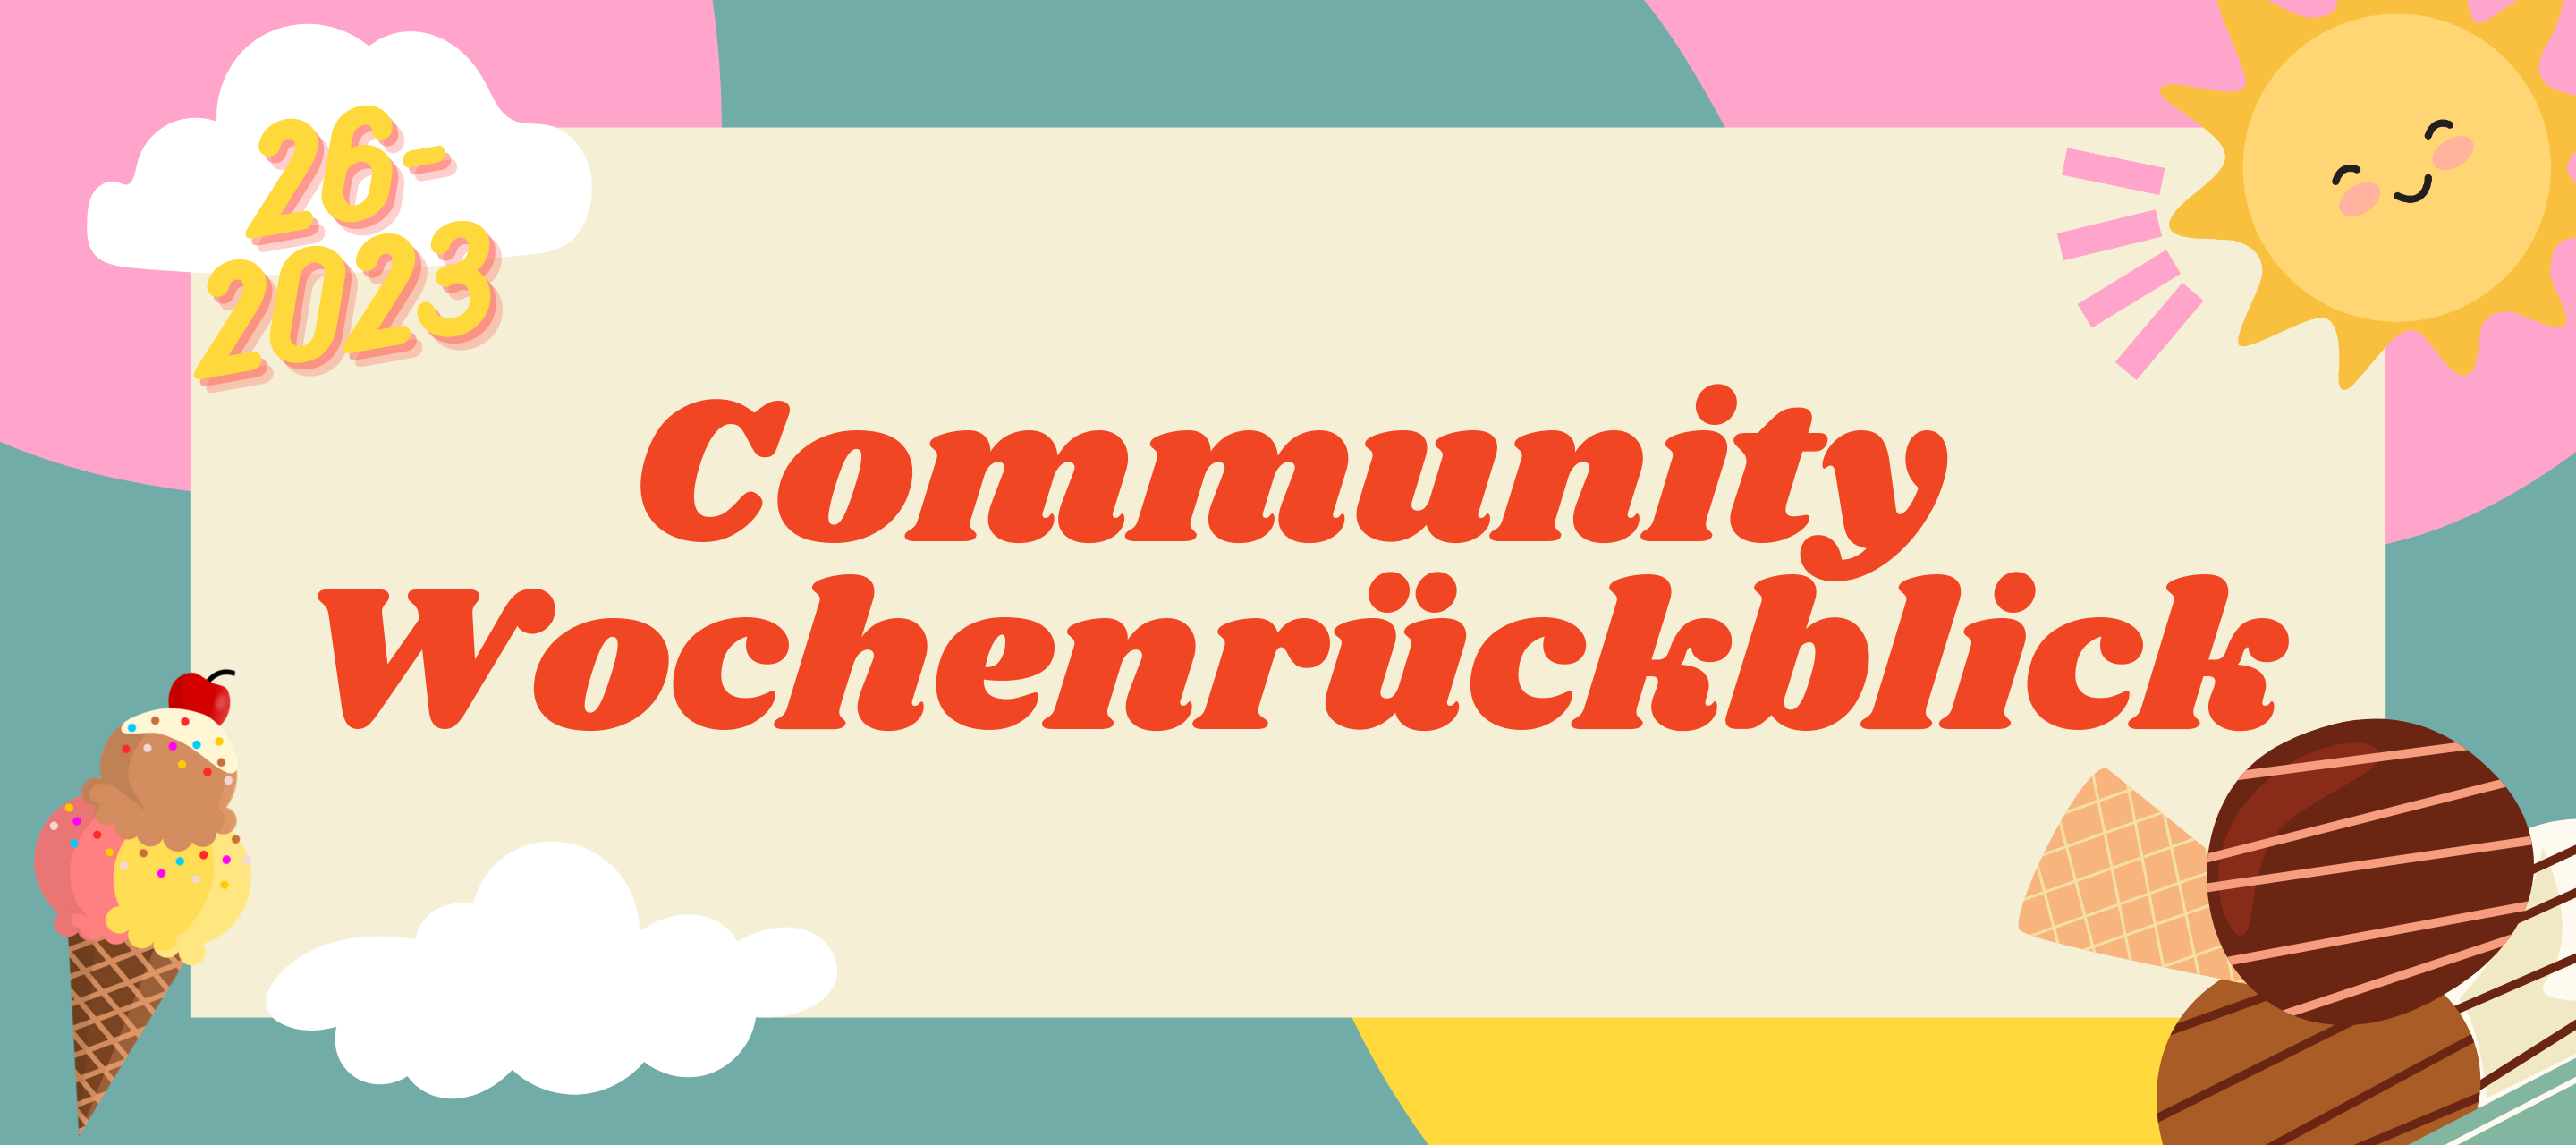 Community Wochenrückblick #26 2023 - Sommer, Sonne, Eiscremezeit